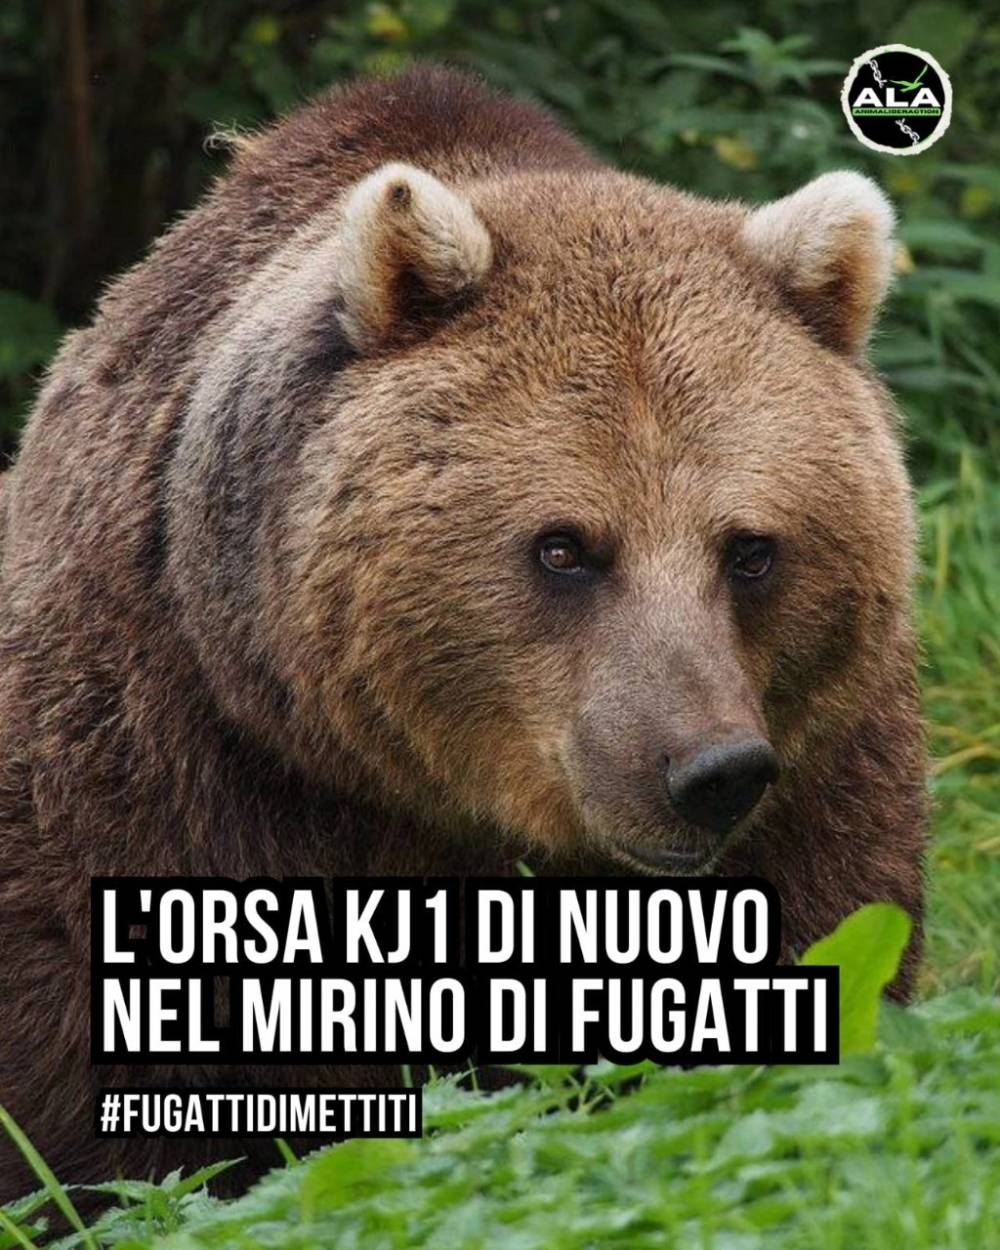 „Románia úgyis befogadja” – egy olasz bíróság elfogadta ezt az érvet egy kilövésre ítélt, emberre támadó medve ügyében